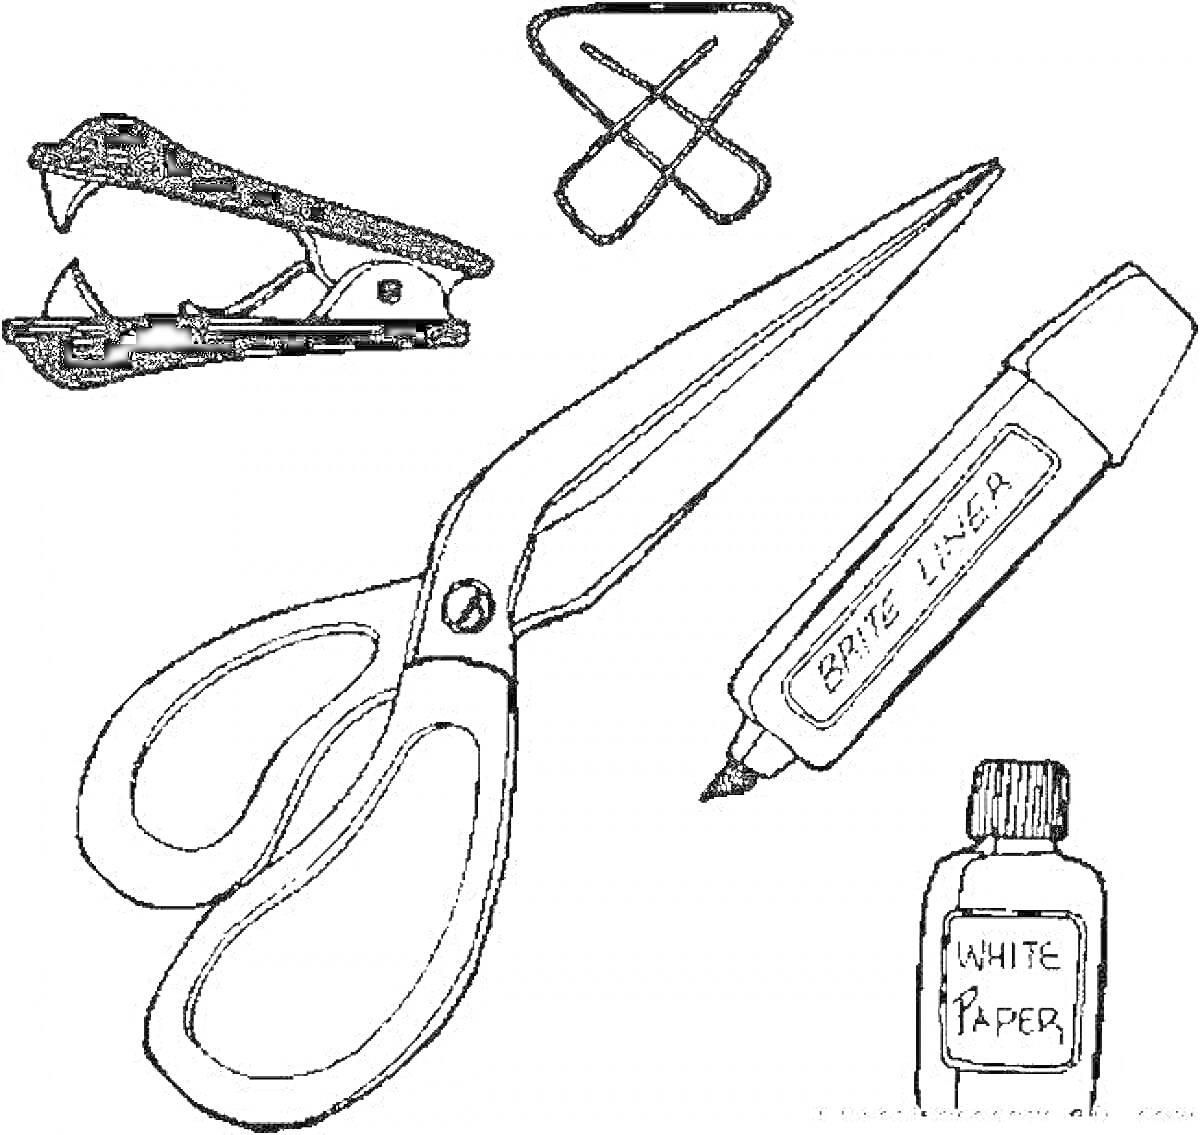 Набор опасных офисных предметов: степлер, скрепка, ножницы, маркер, бутылочка краски